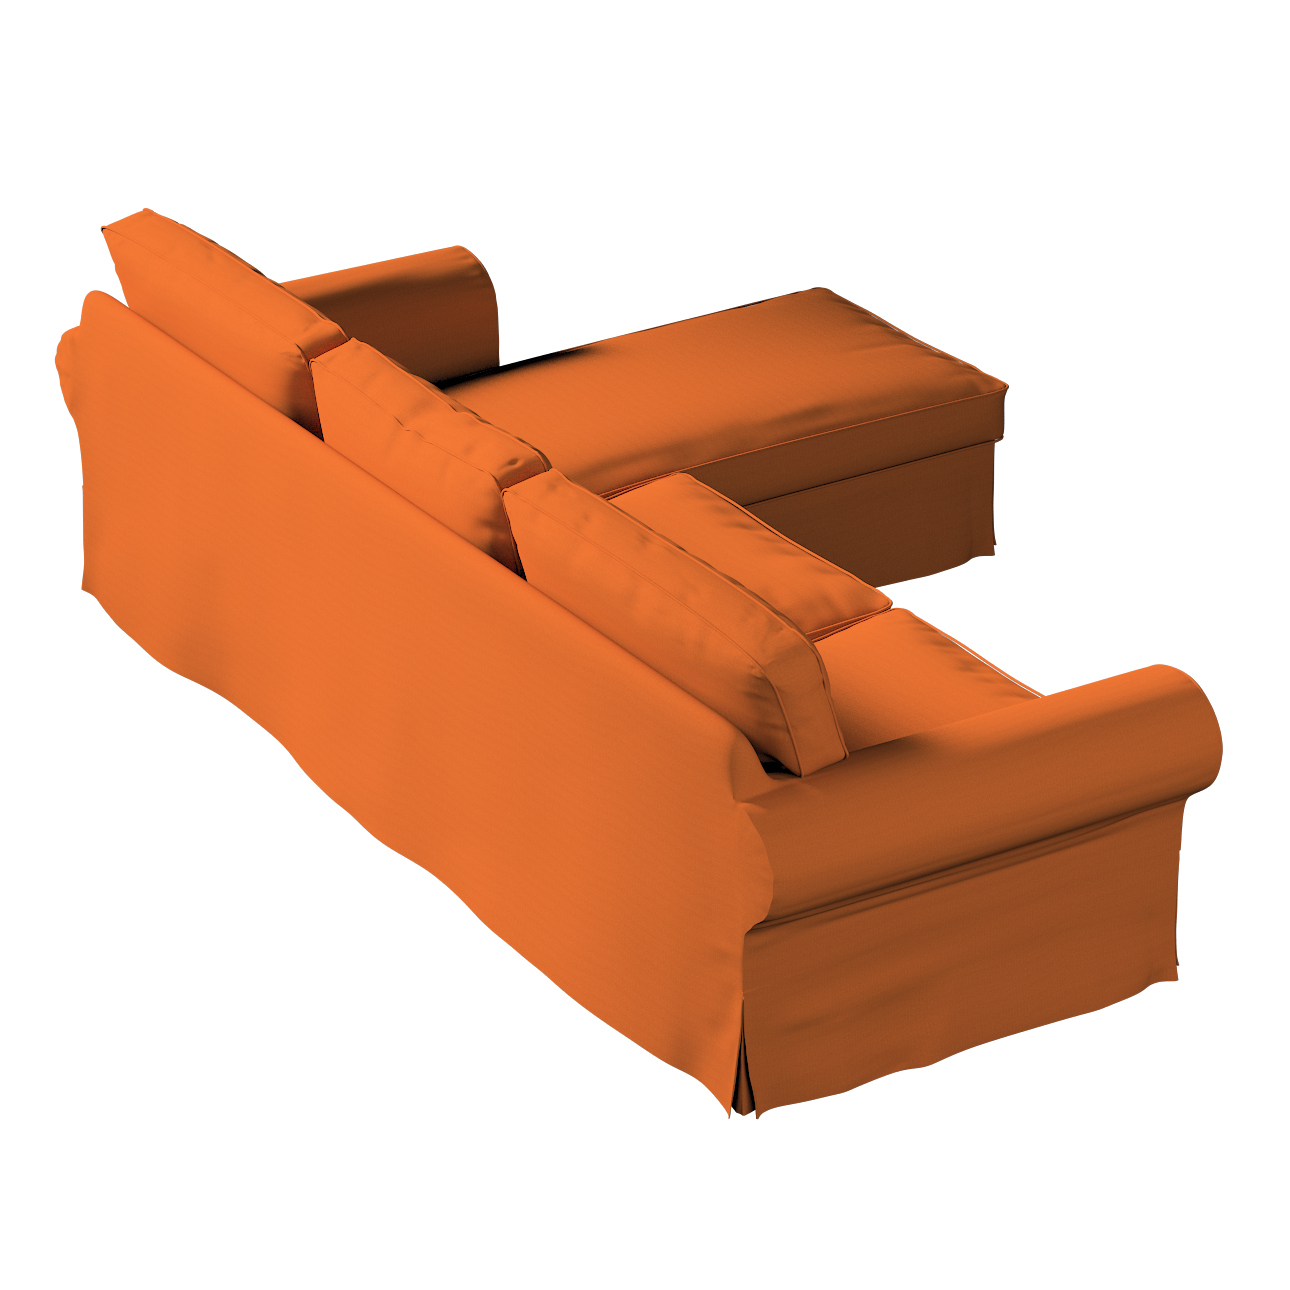 Bezug für Ektorp 2-Sitzer Sofa mit Recamiere, Karamell, Ektorp 2-Sitzer Sof günstig online kaufen